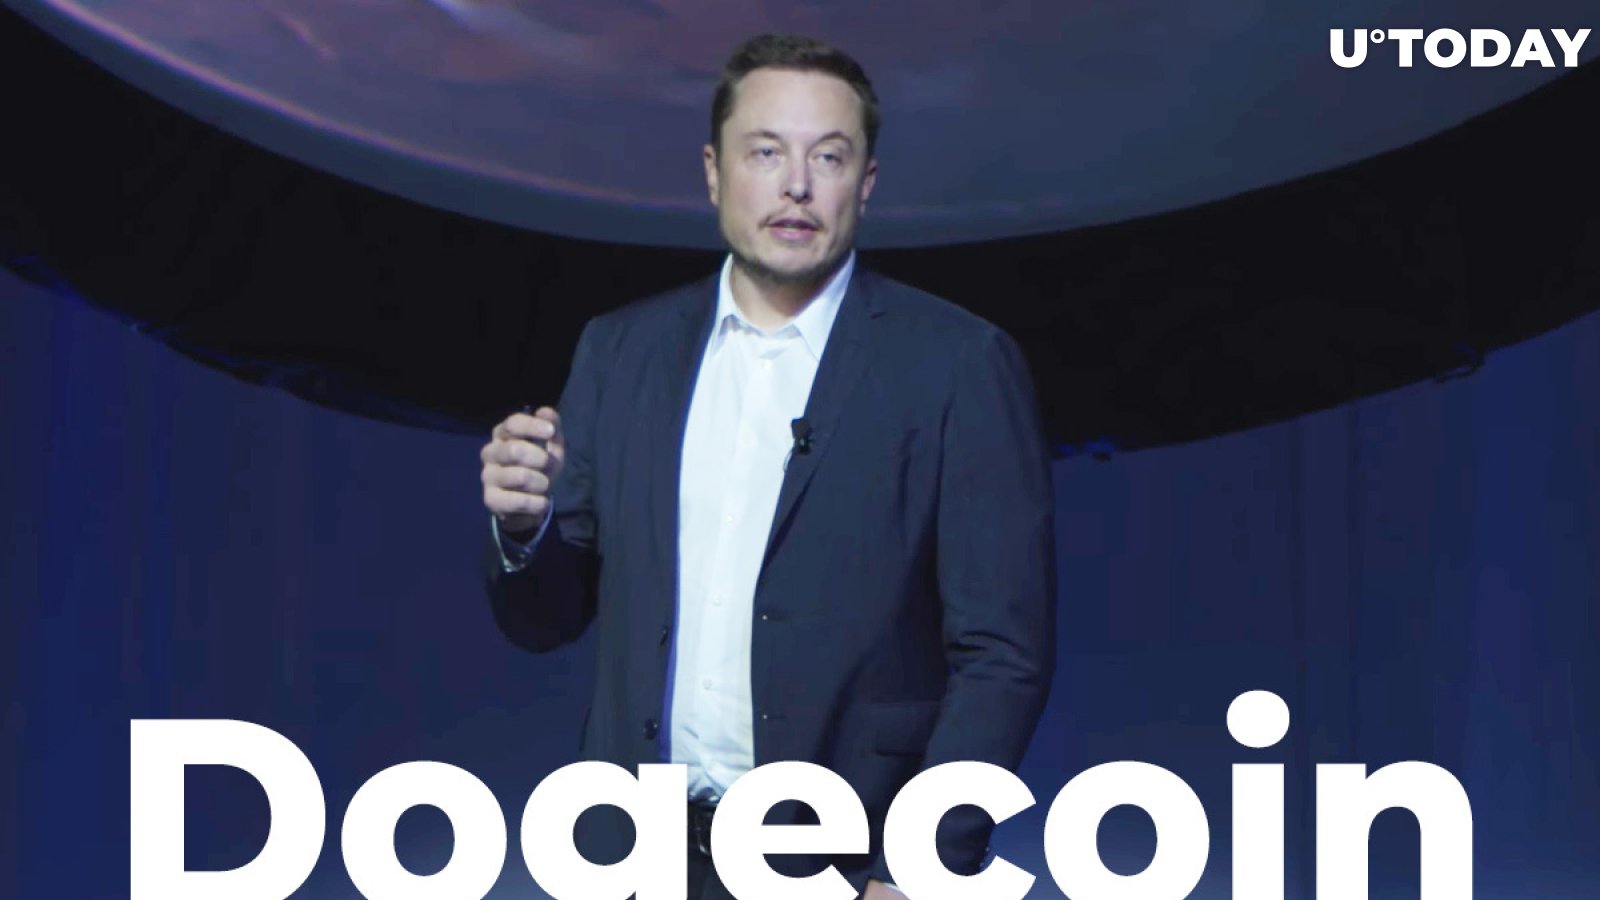 Elon Musk Jokes About Tesla Adding Dogecoin Feature